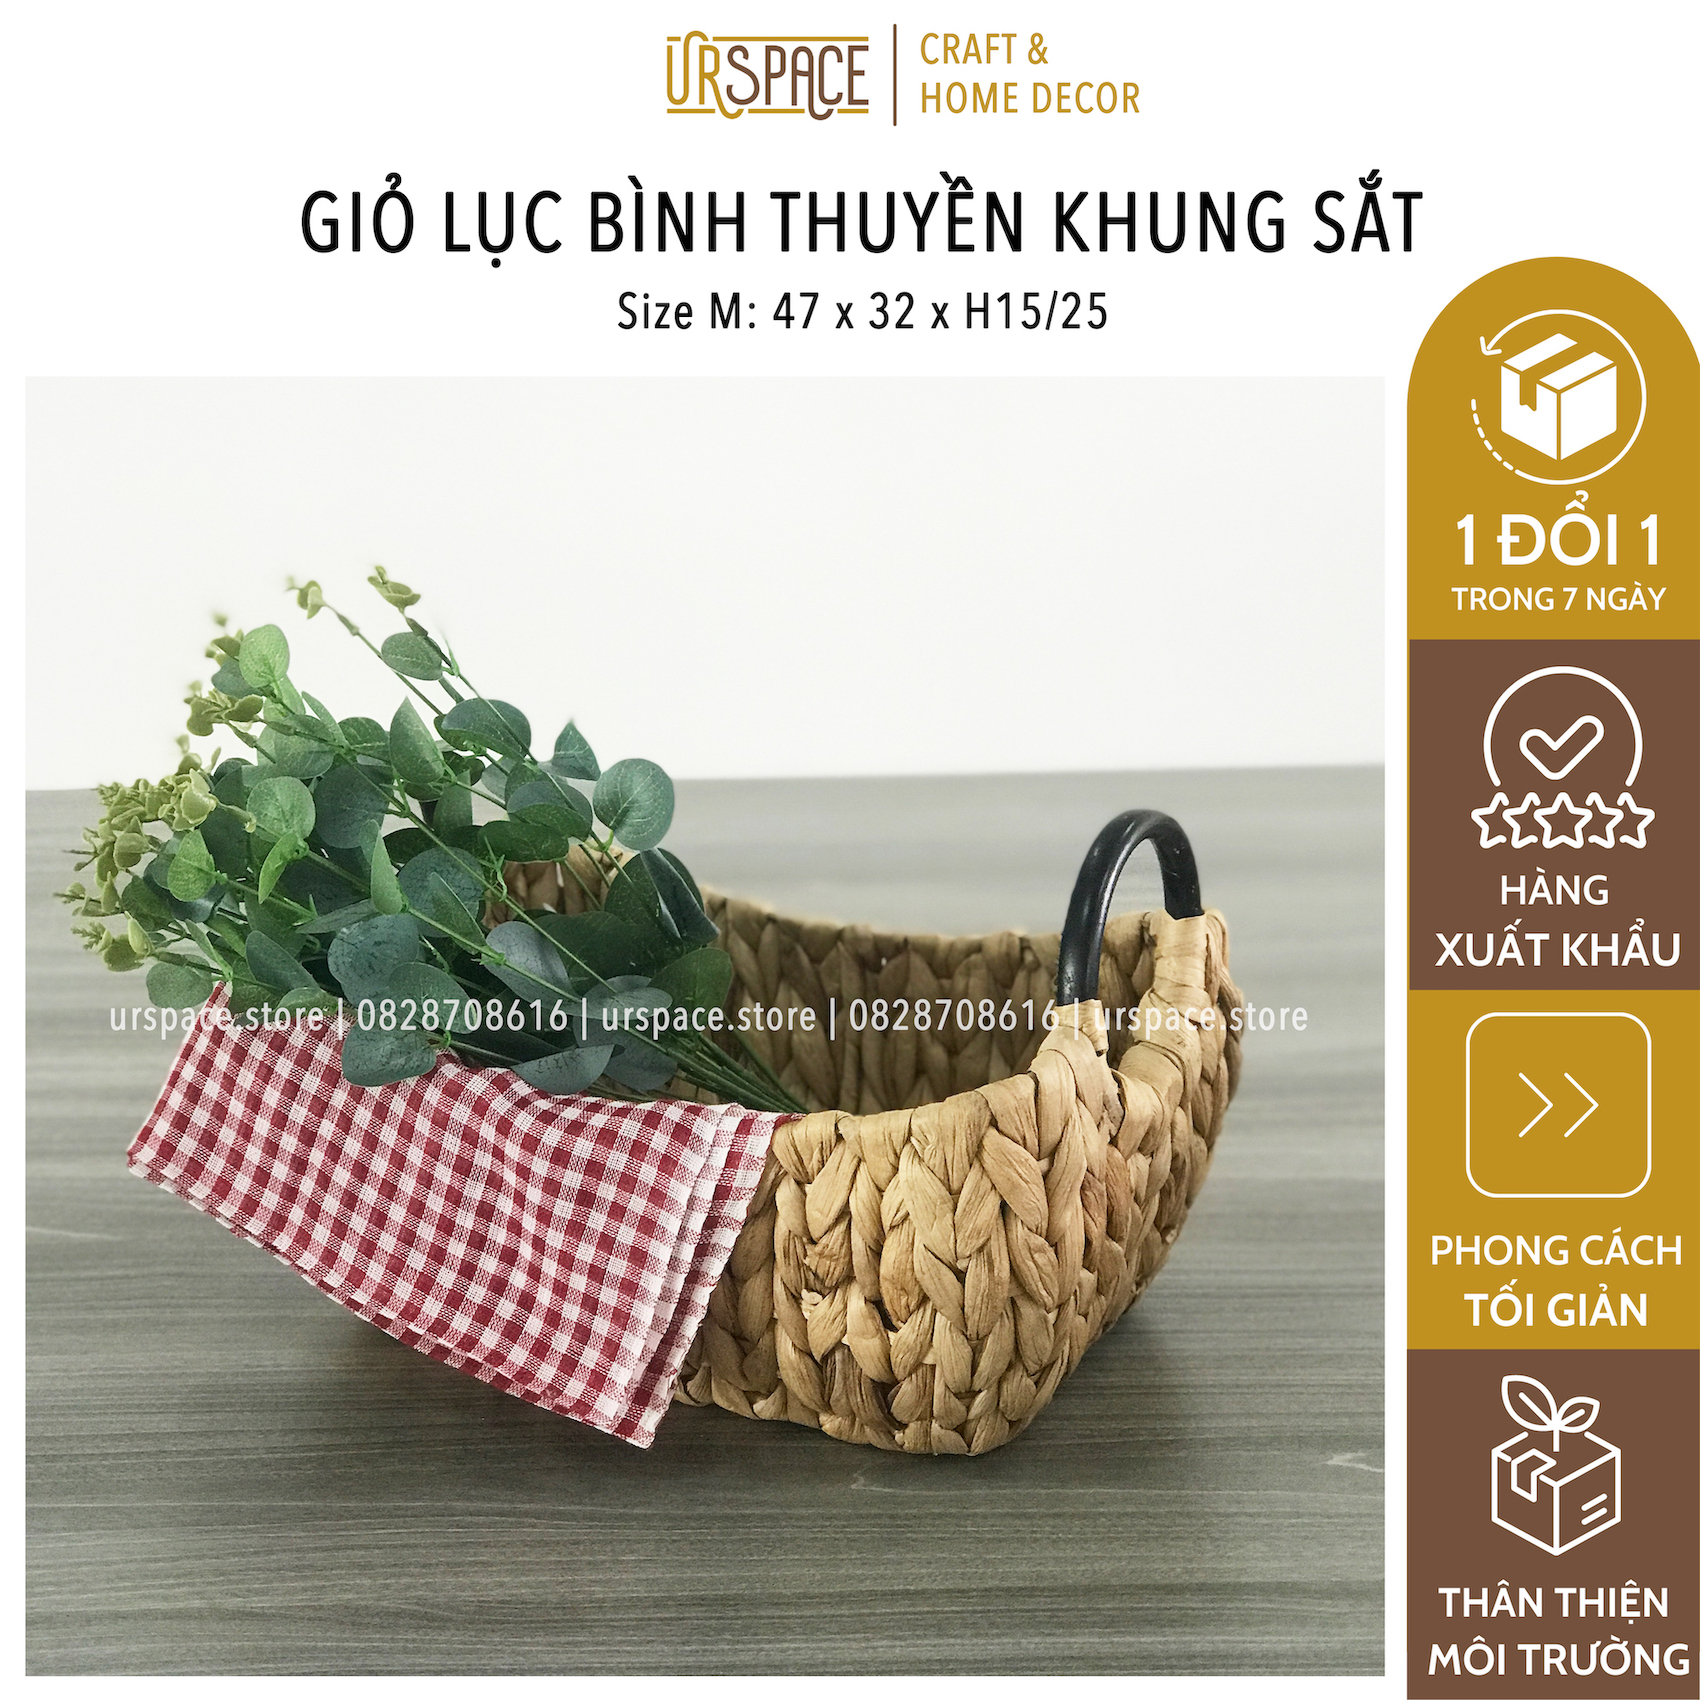 Giỏ lục bình (cói) đựng đồ đa năng trang trí hình thuyền có quai cầm/ Hand woven water hyacinth basket with metal handle